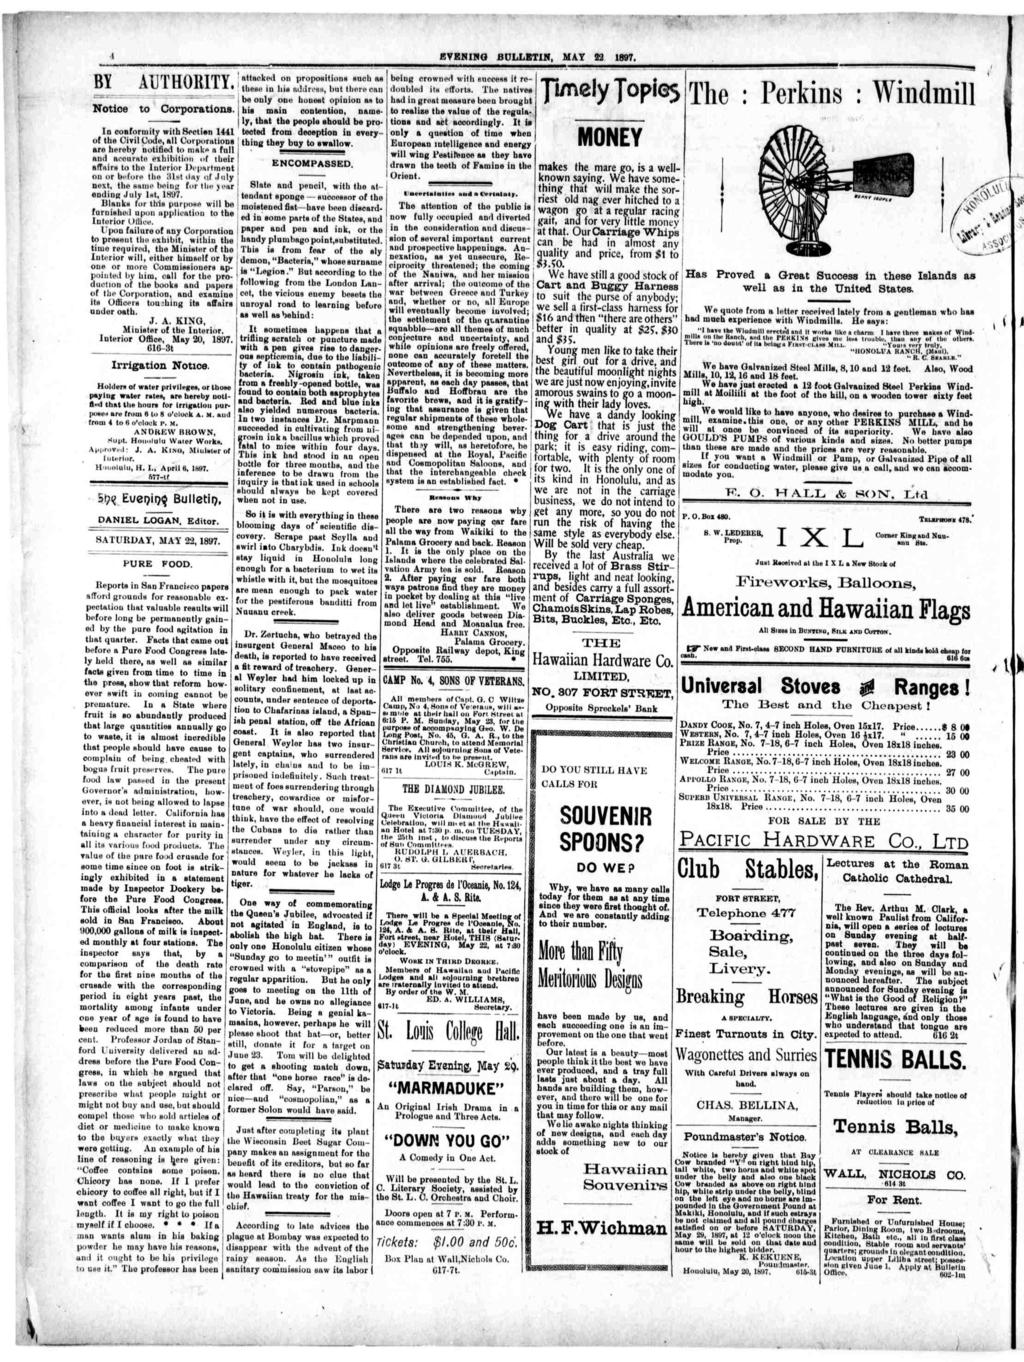 BYENNG J3ULLETN, MAY 22, 1897. i A MATTTTOTJTTY Noioe o Corporaions.